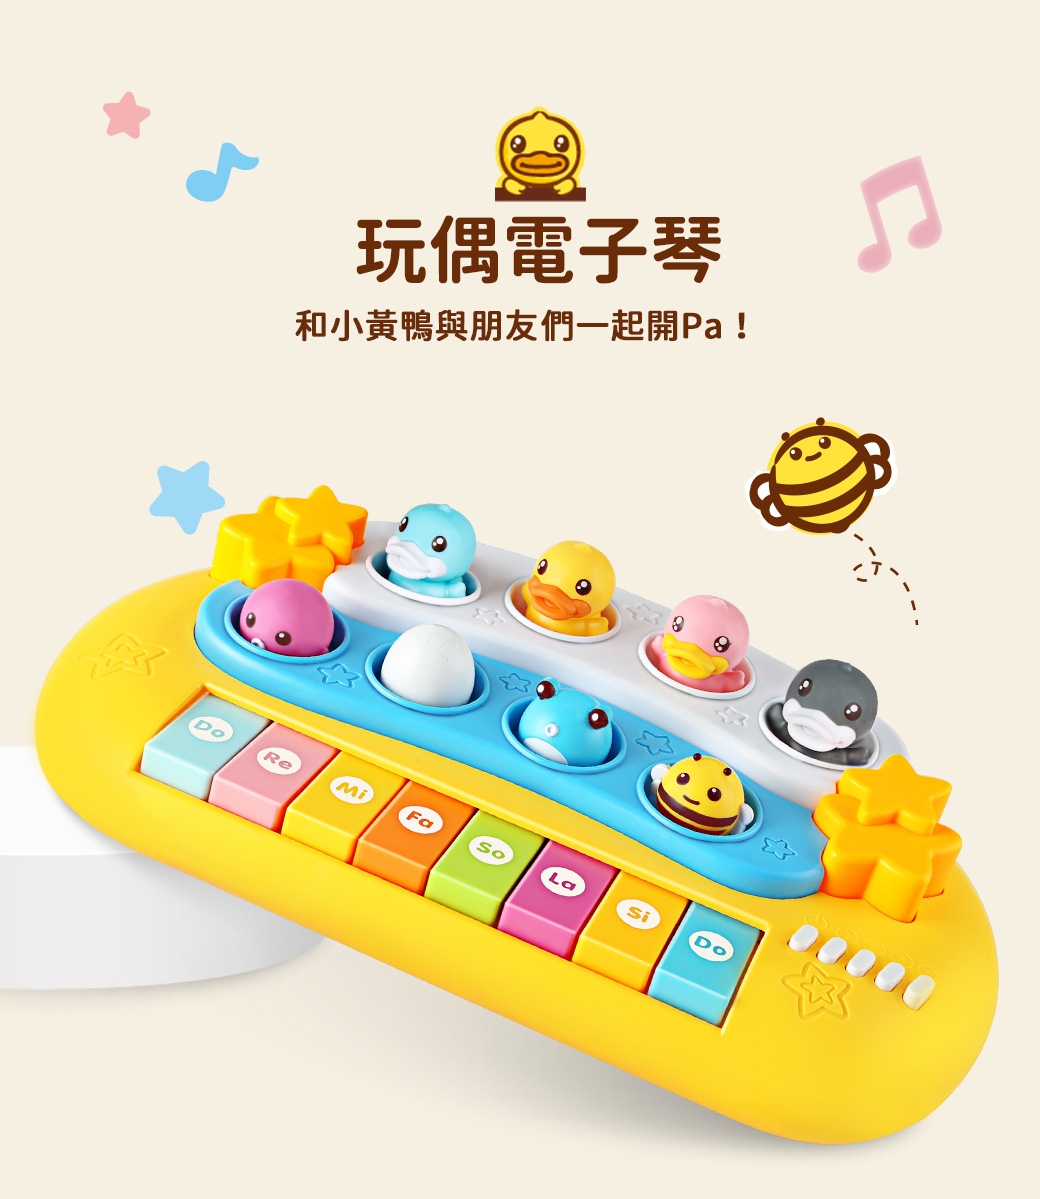 B.Duck 小黃鴨 玩偶電子琴 BD028 音樂有聲玩具